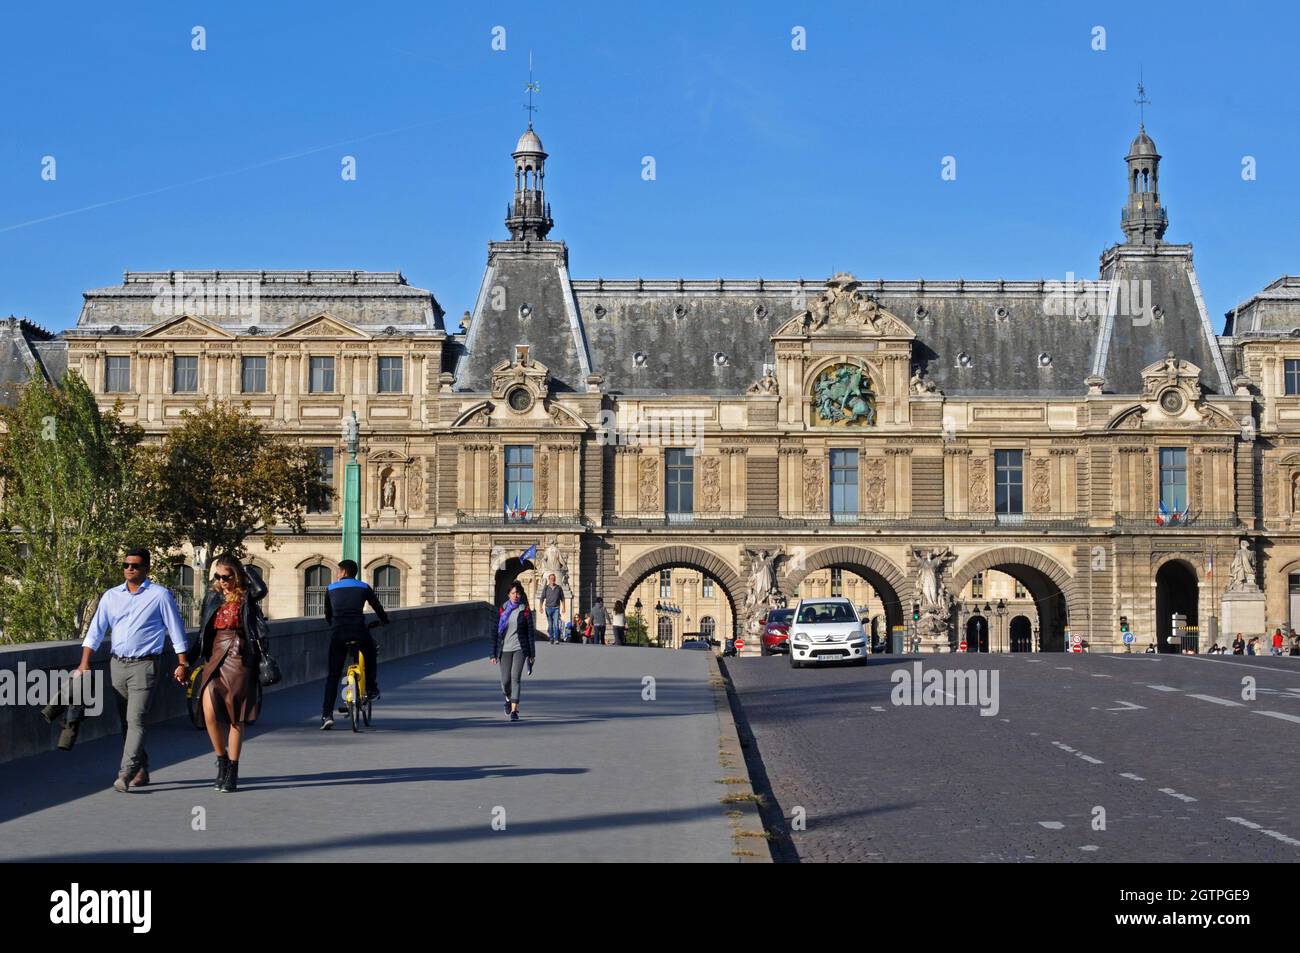 Pedestrians and traffic cross the Pont du Carrousel in front of the historic Pavillon de la trémoille, part of the Louvre complex. Stock Photo